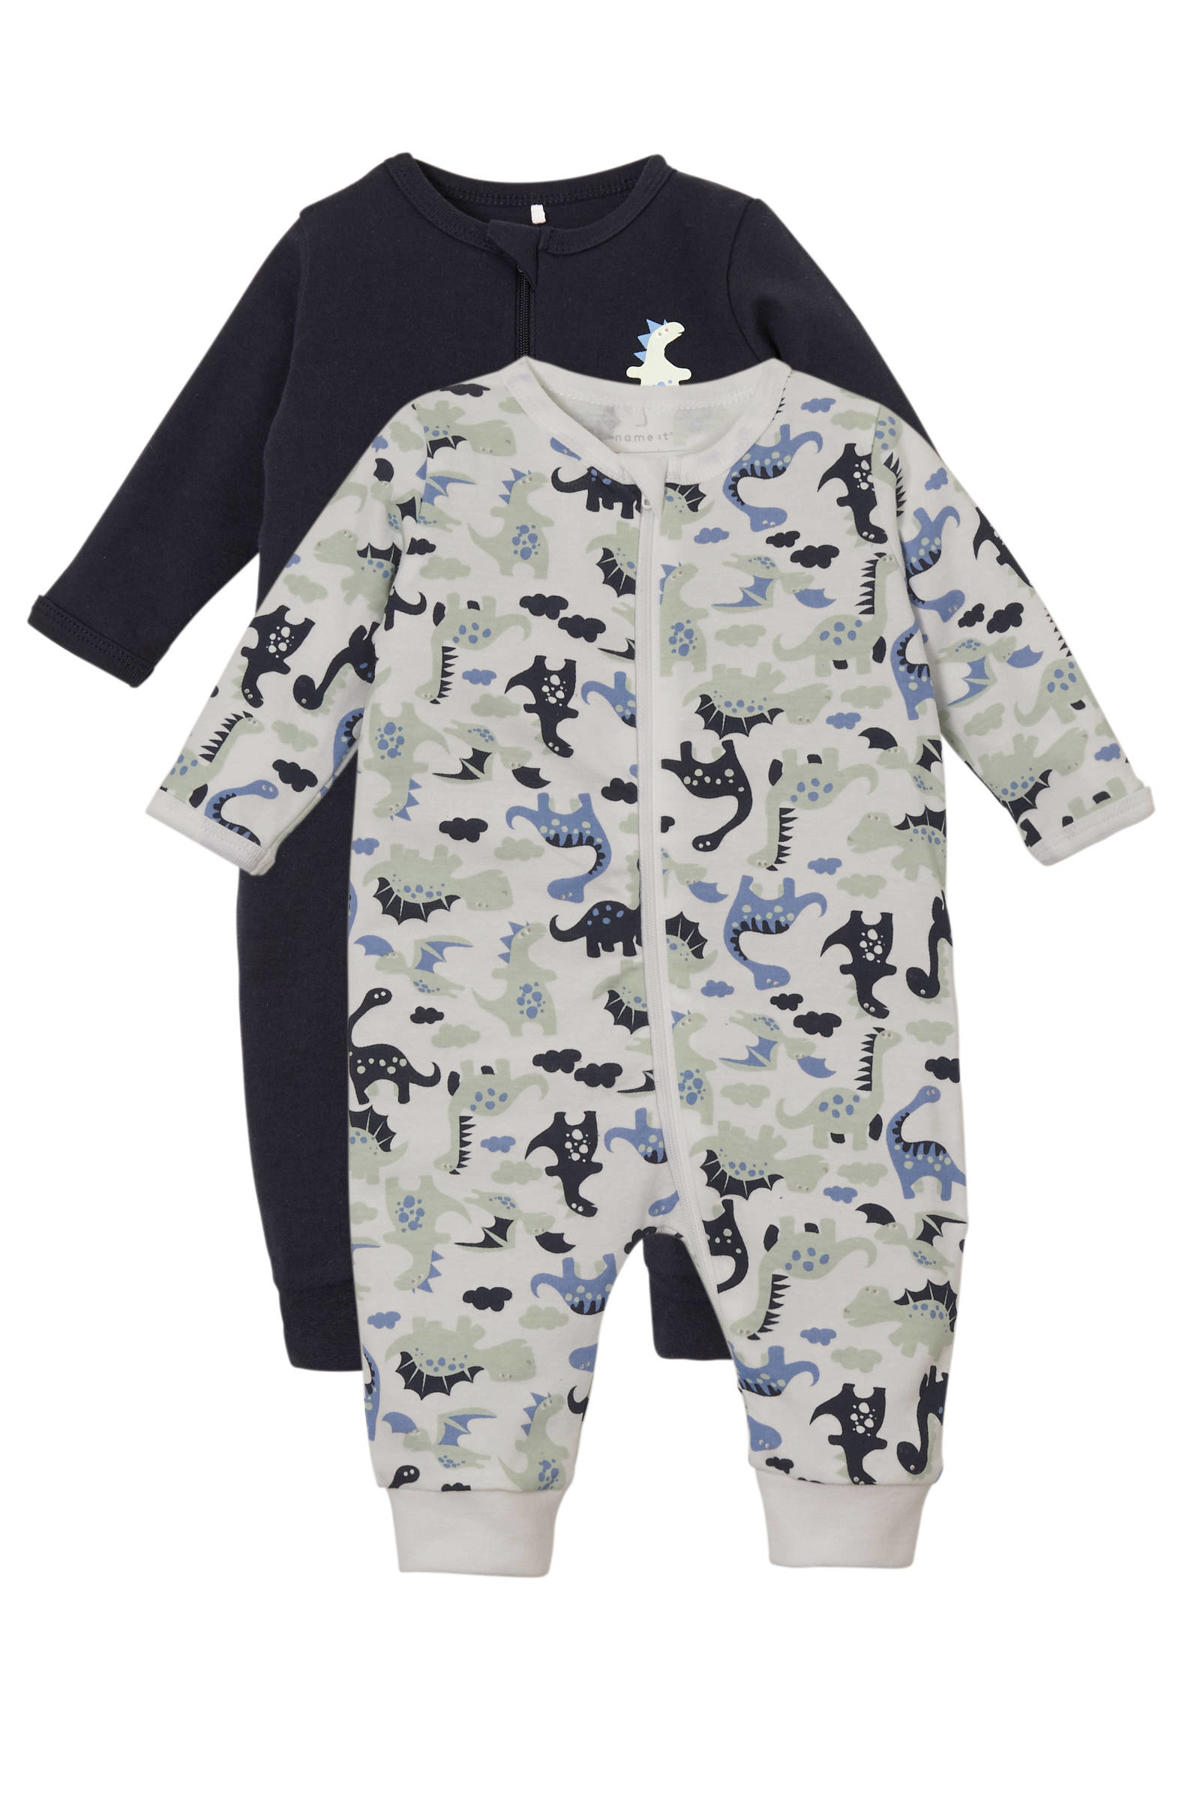 doden Gewond raken lepel NAME IT BABY newborn baby pyjama - set van 2 | wehkamp